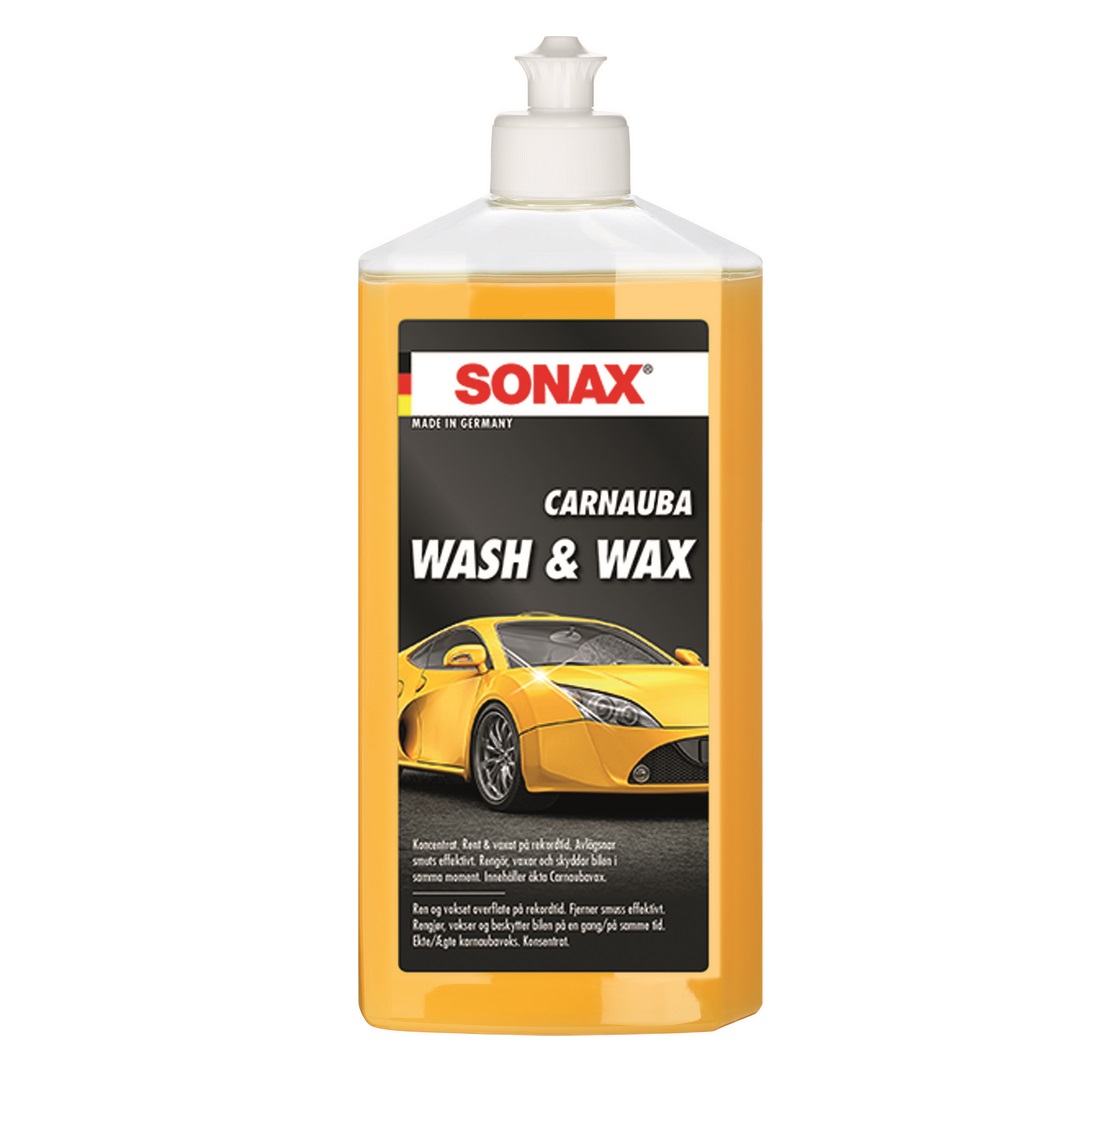 Sonax Carnauba Wash & Wax, 500ML